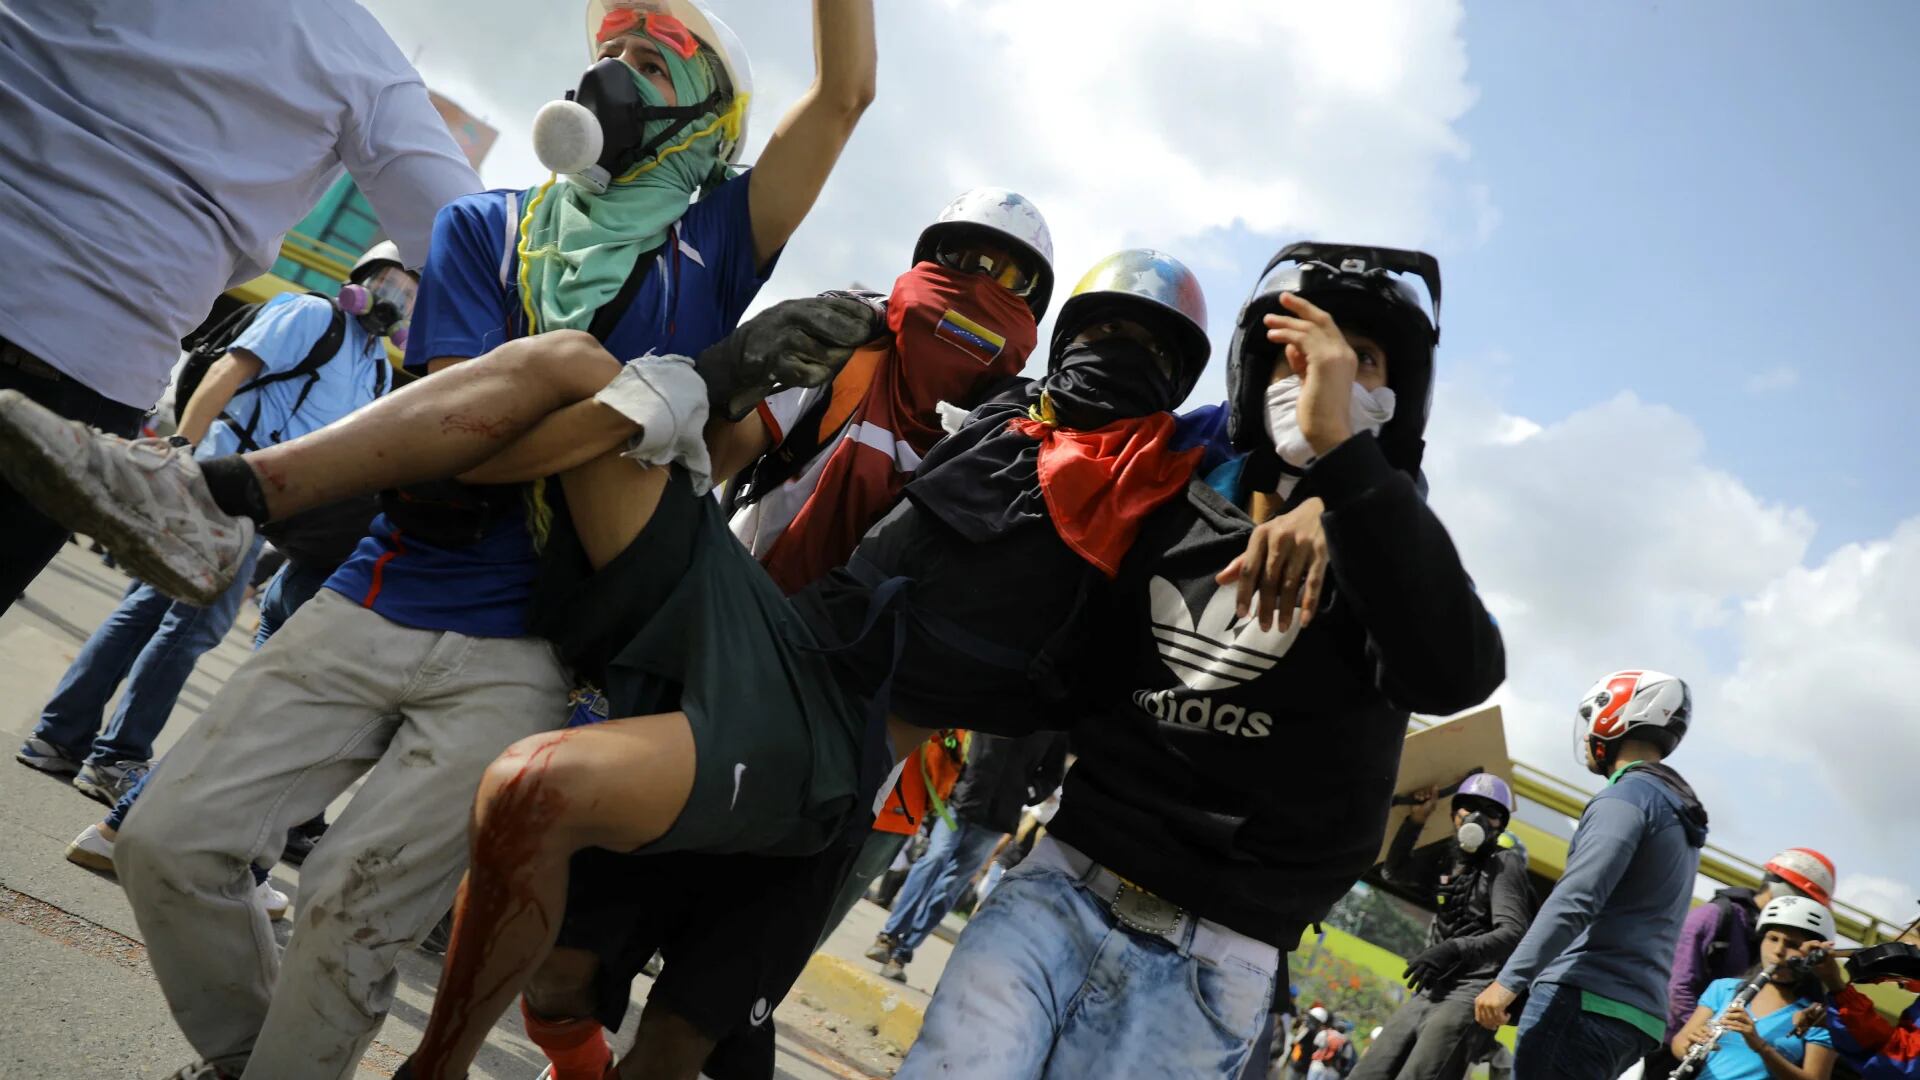 Los manifestantes son, casi a diario, reprimidos ferozmente por las fuerzas chavistas. (Reuters)